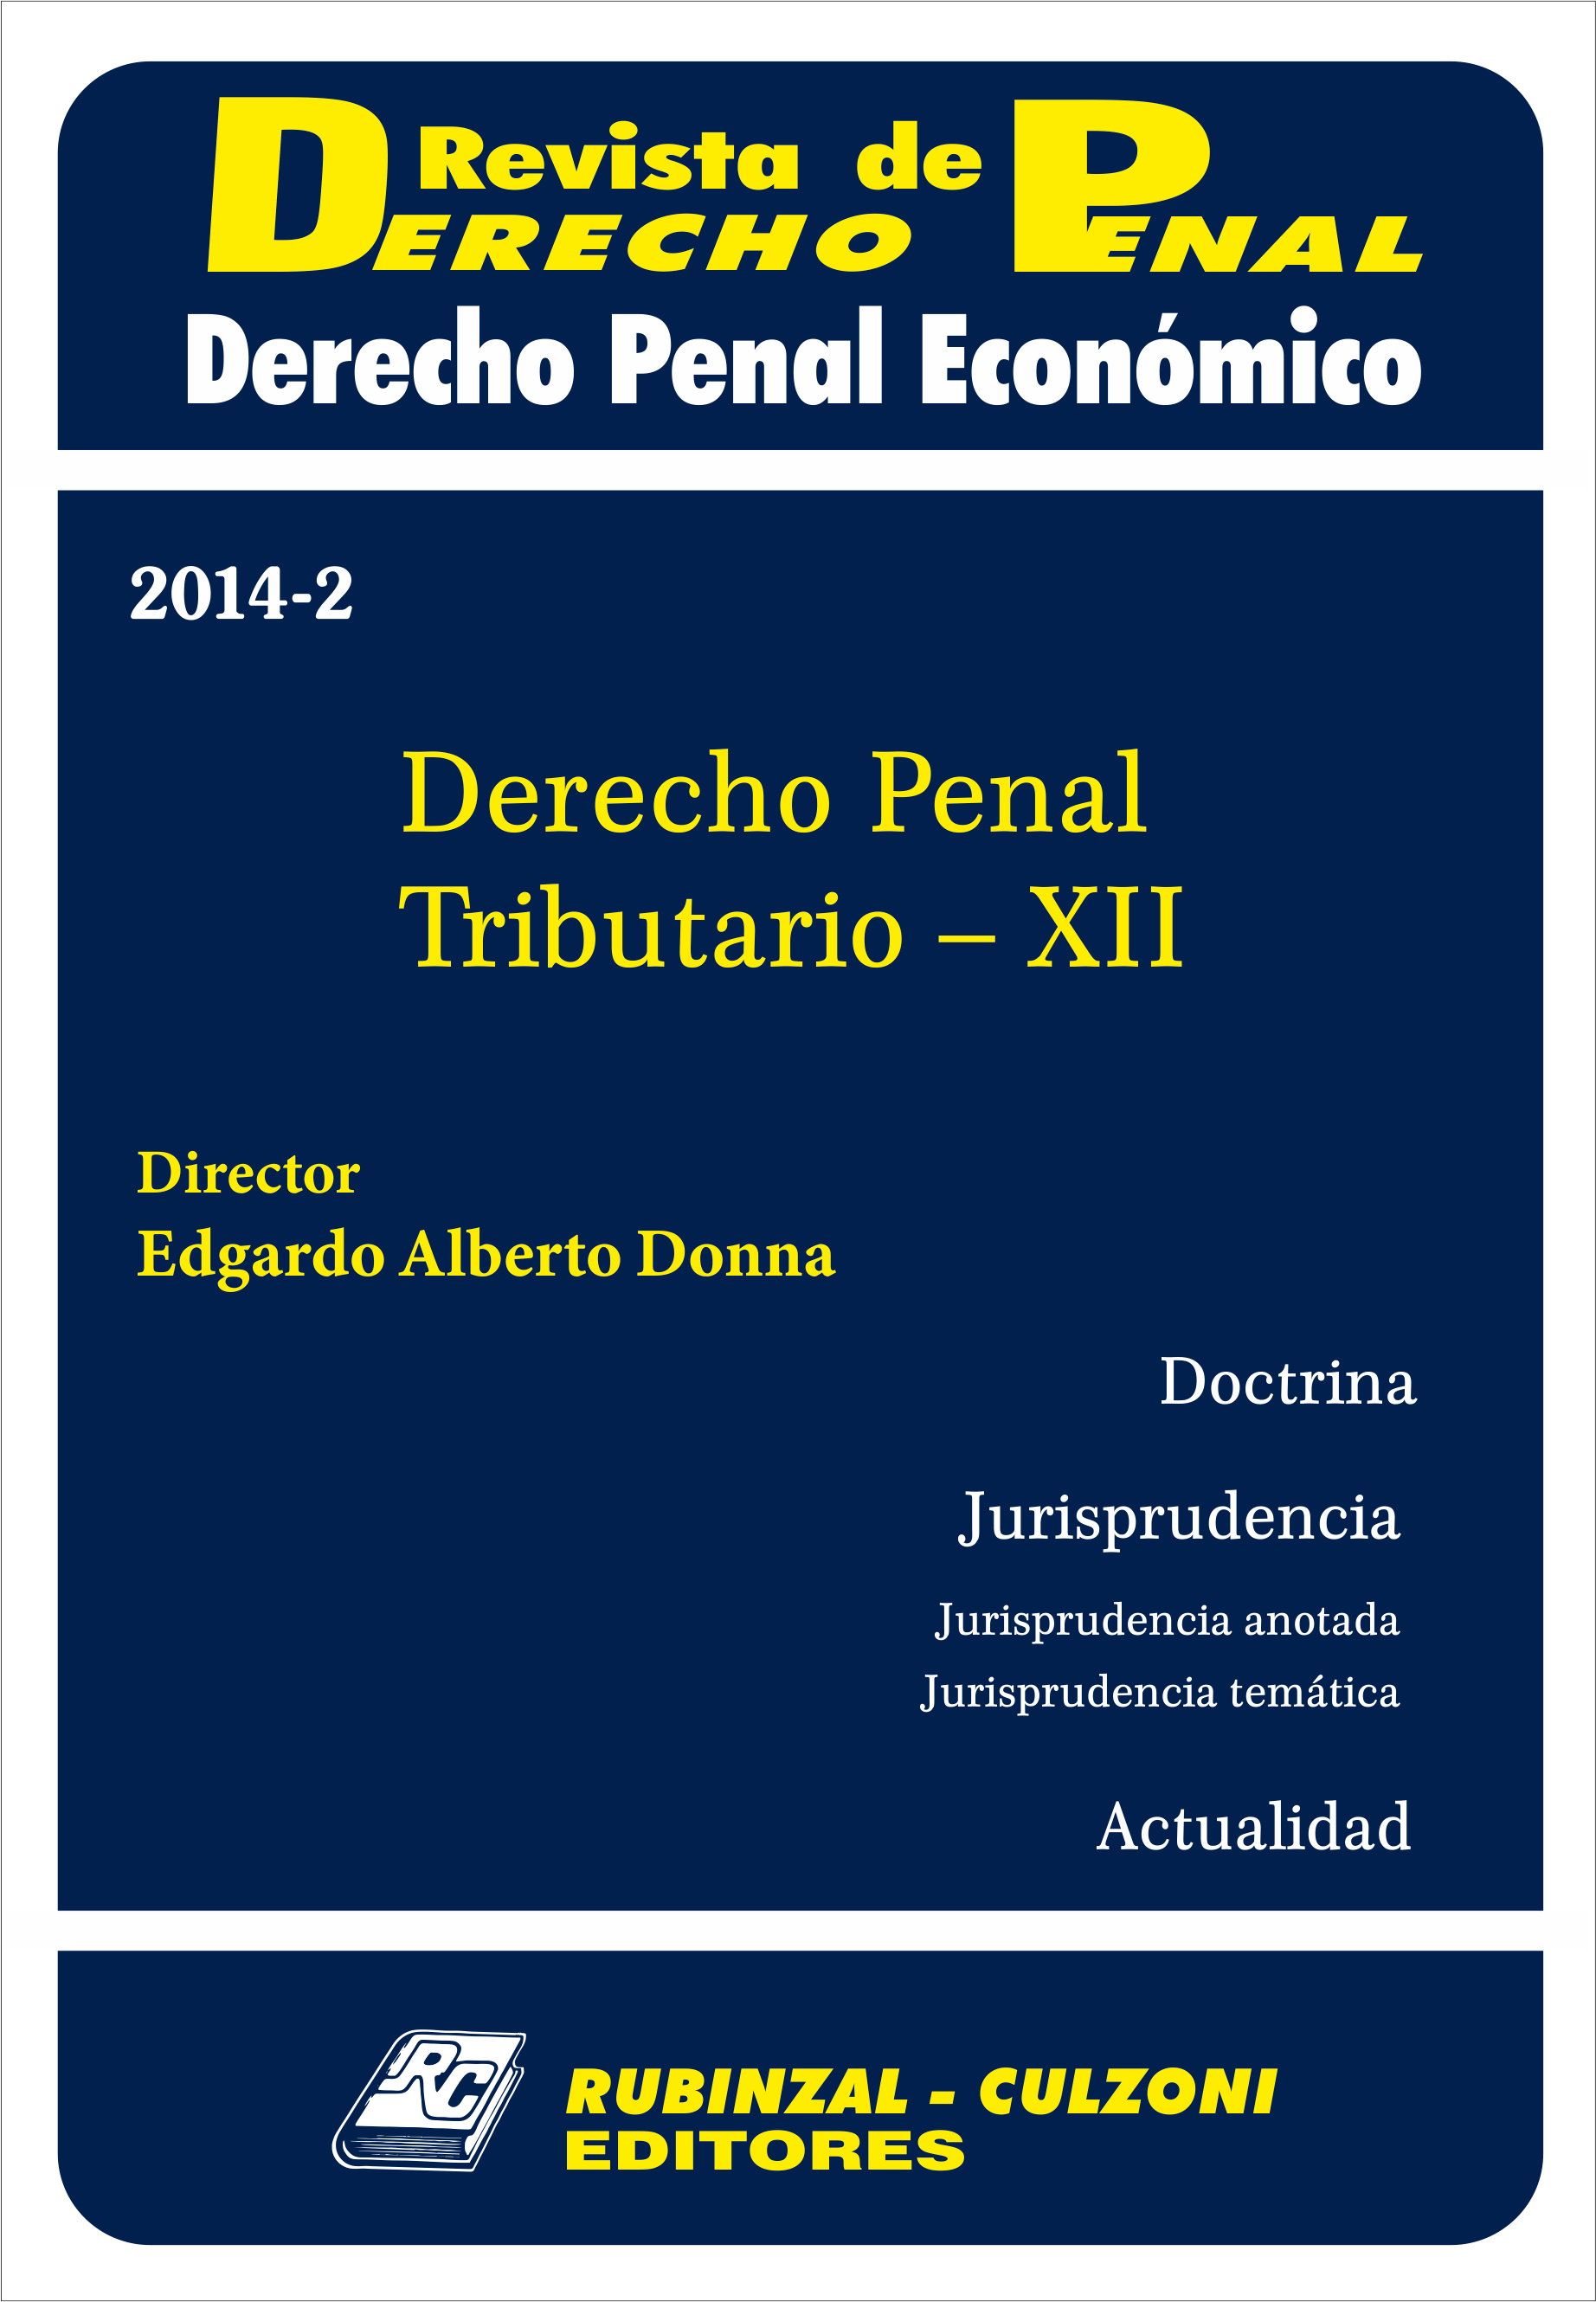 Derecho Penal Tributario - XII. [2014-2]